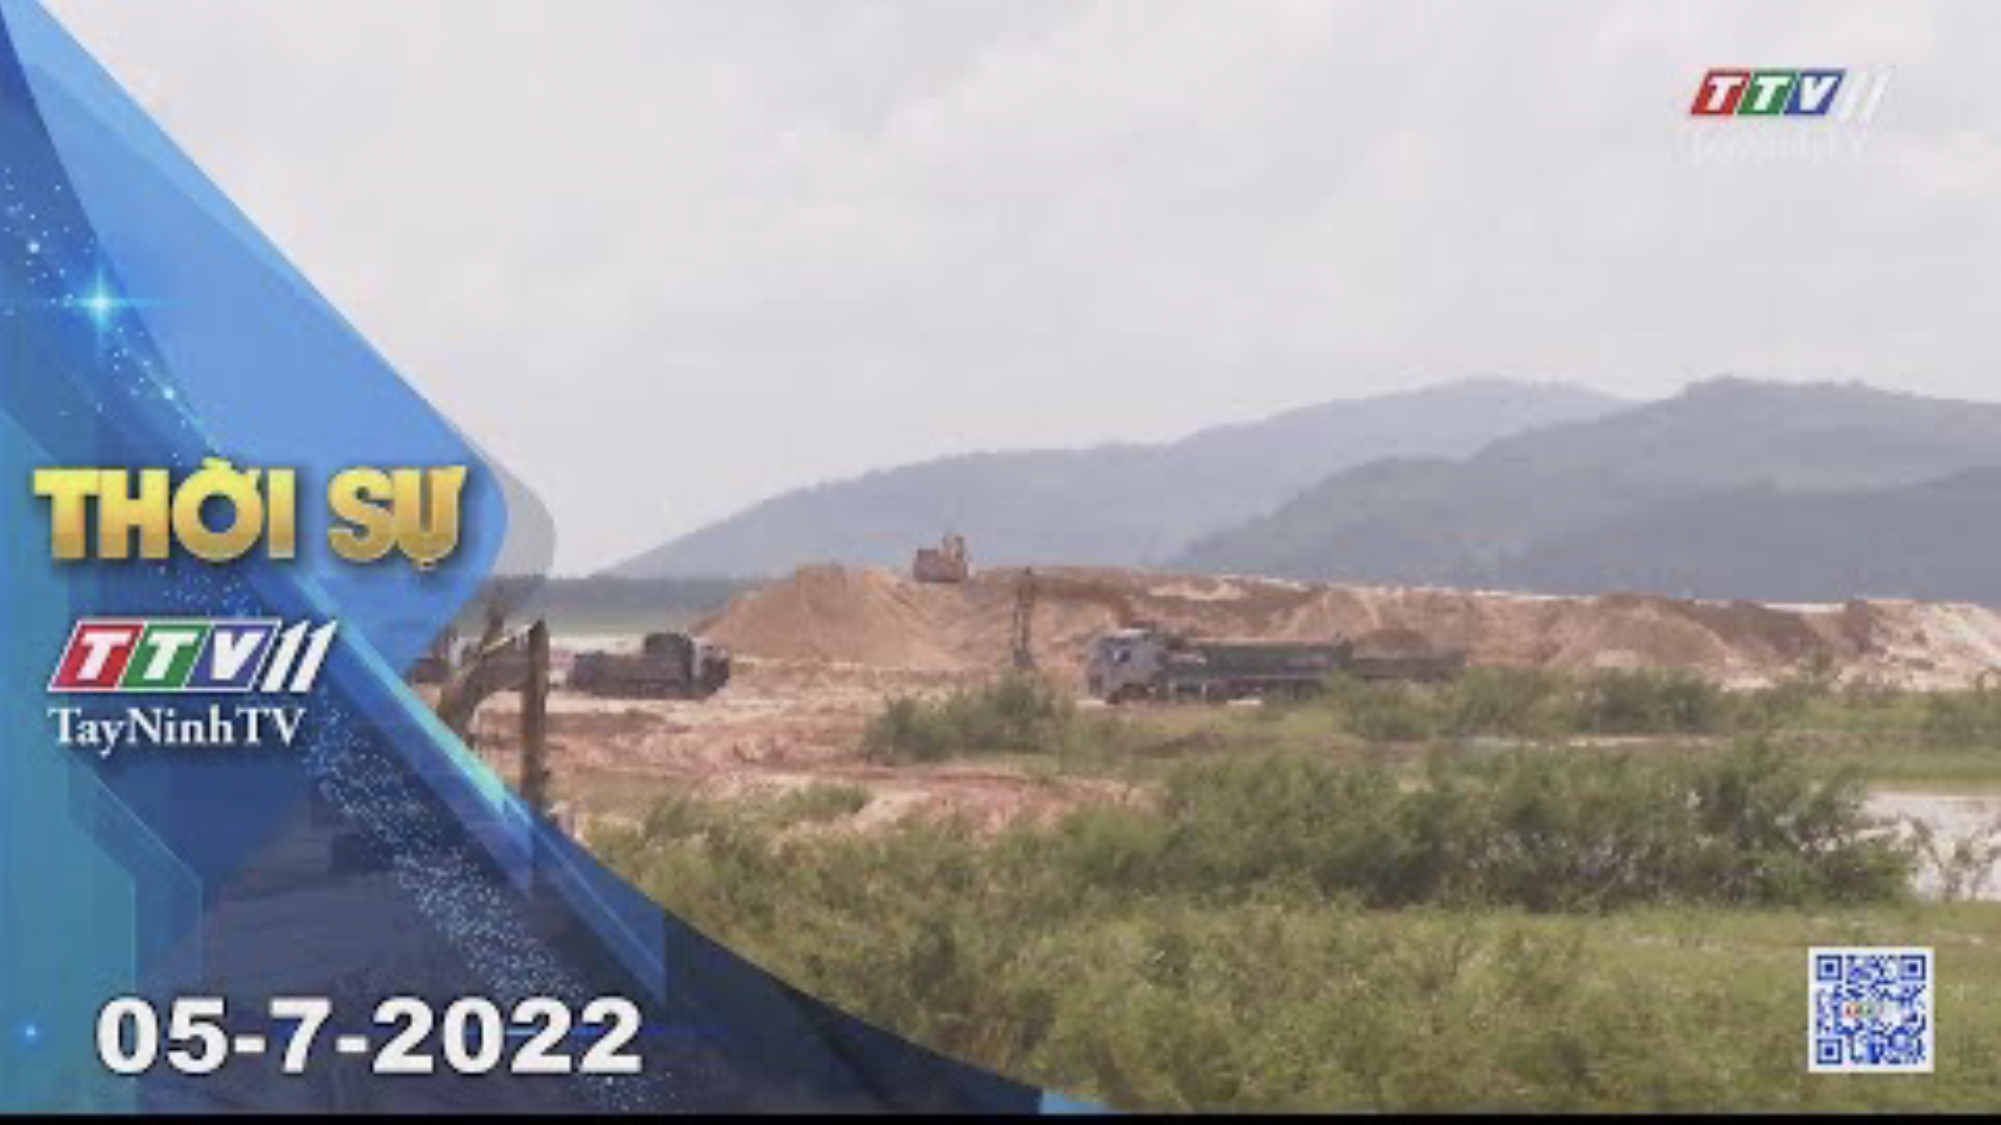 Thời sự Tây Ninh 05-7-2022 | Tin tức hôm nay | TayNinhTV